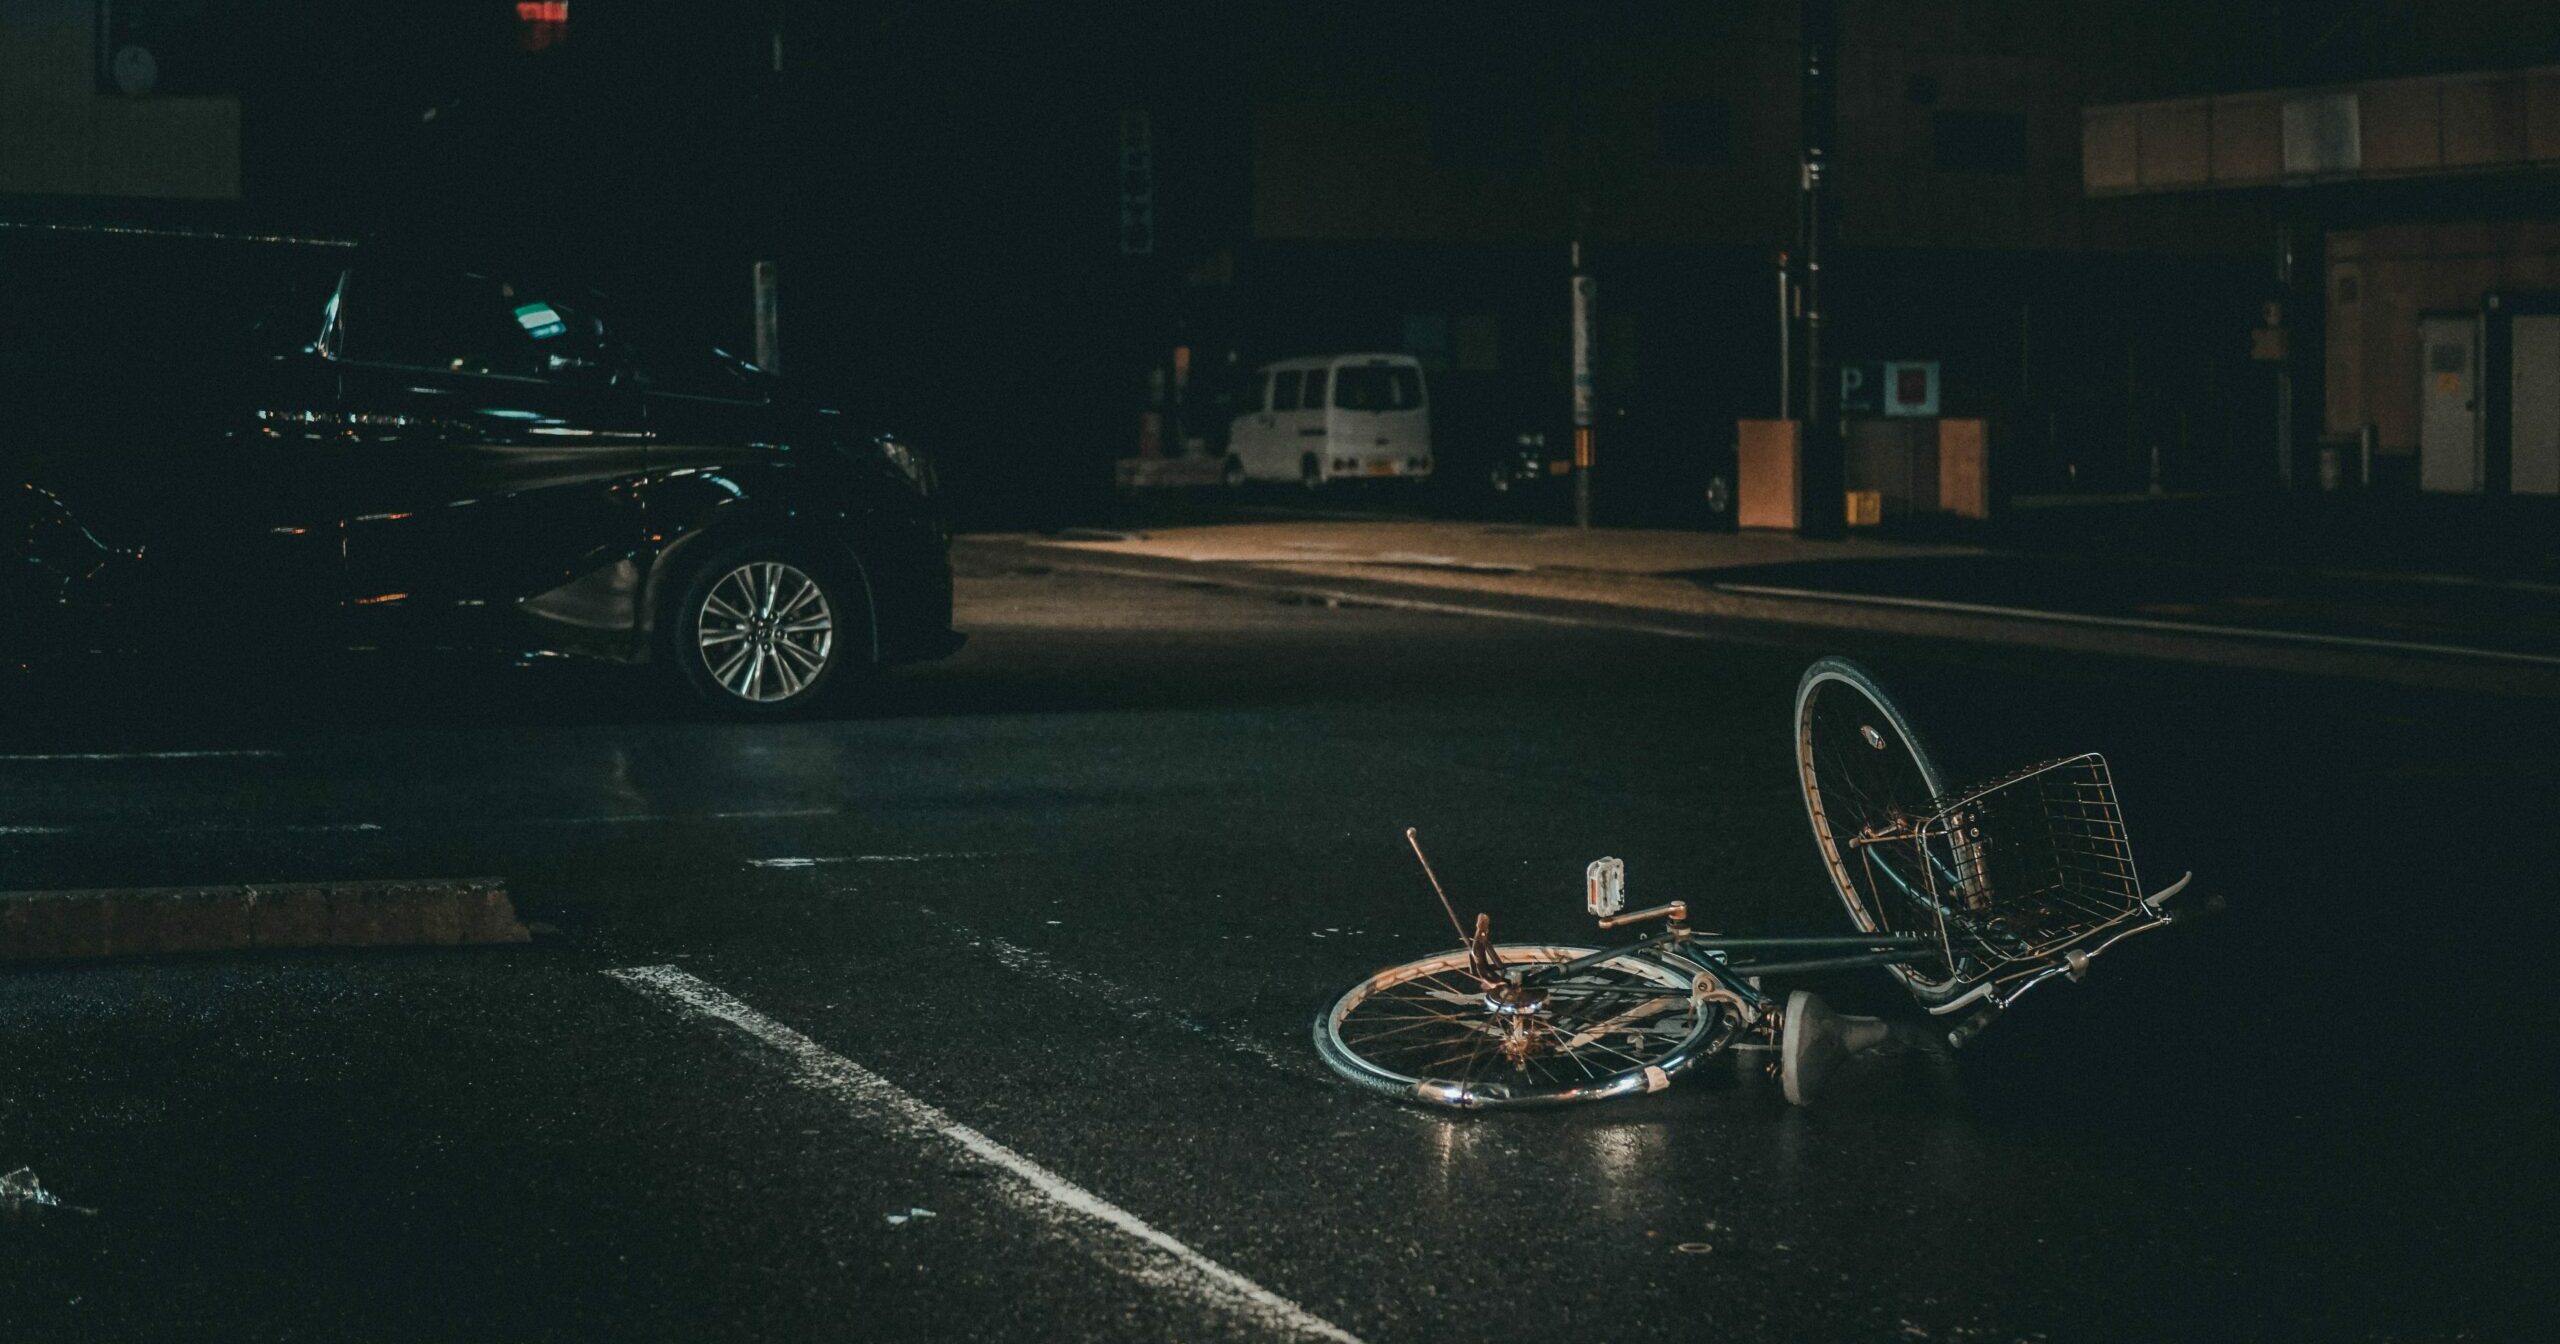 Lire la suite à propos de l’article Un cycliste sur trois se tue seul